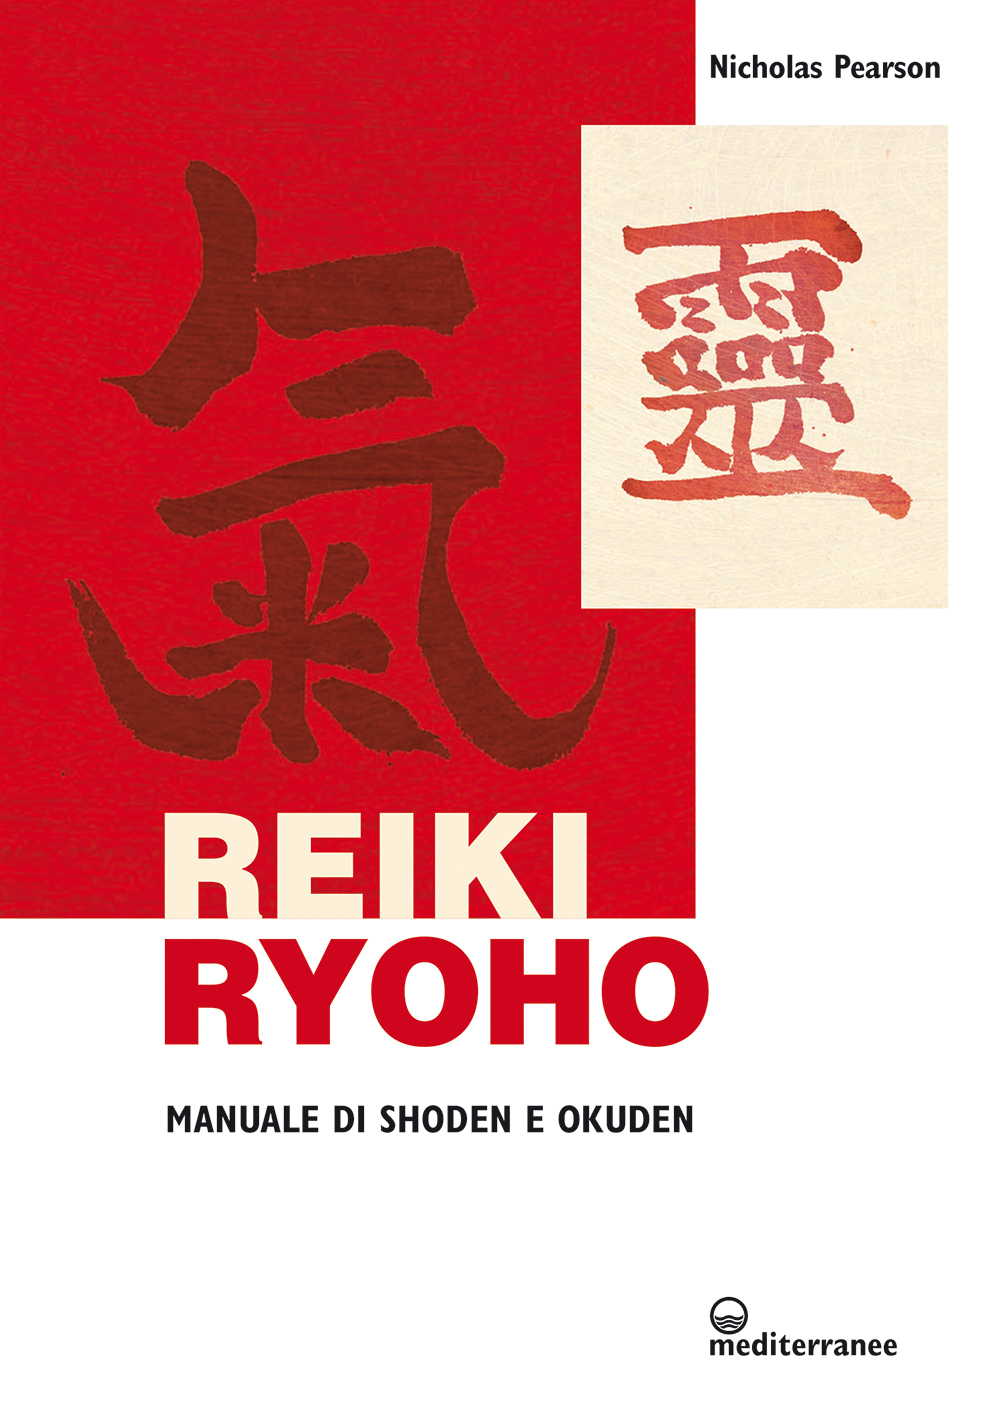 Libri Pearson Nicholas - Reiki Ryoho. Manuale Di Shoden E Okuden NUOVO SIGILLATO, EDIZIONE DEL 16/07/2020 SUBITO DISPONIBILE